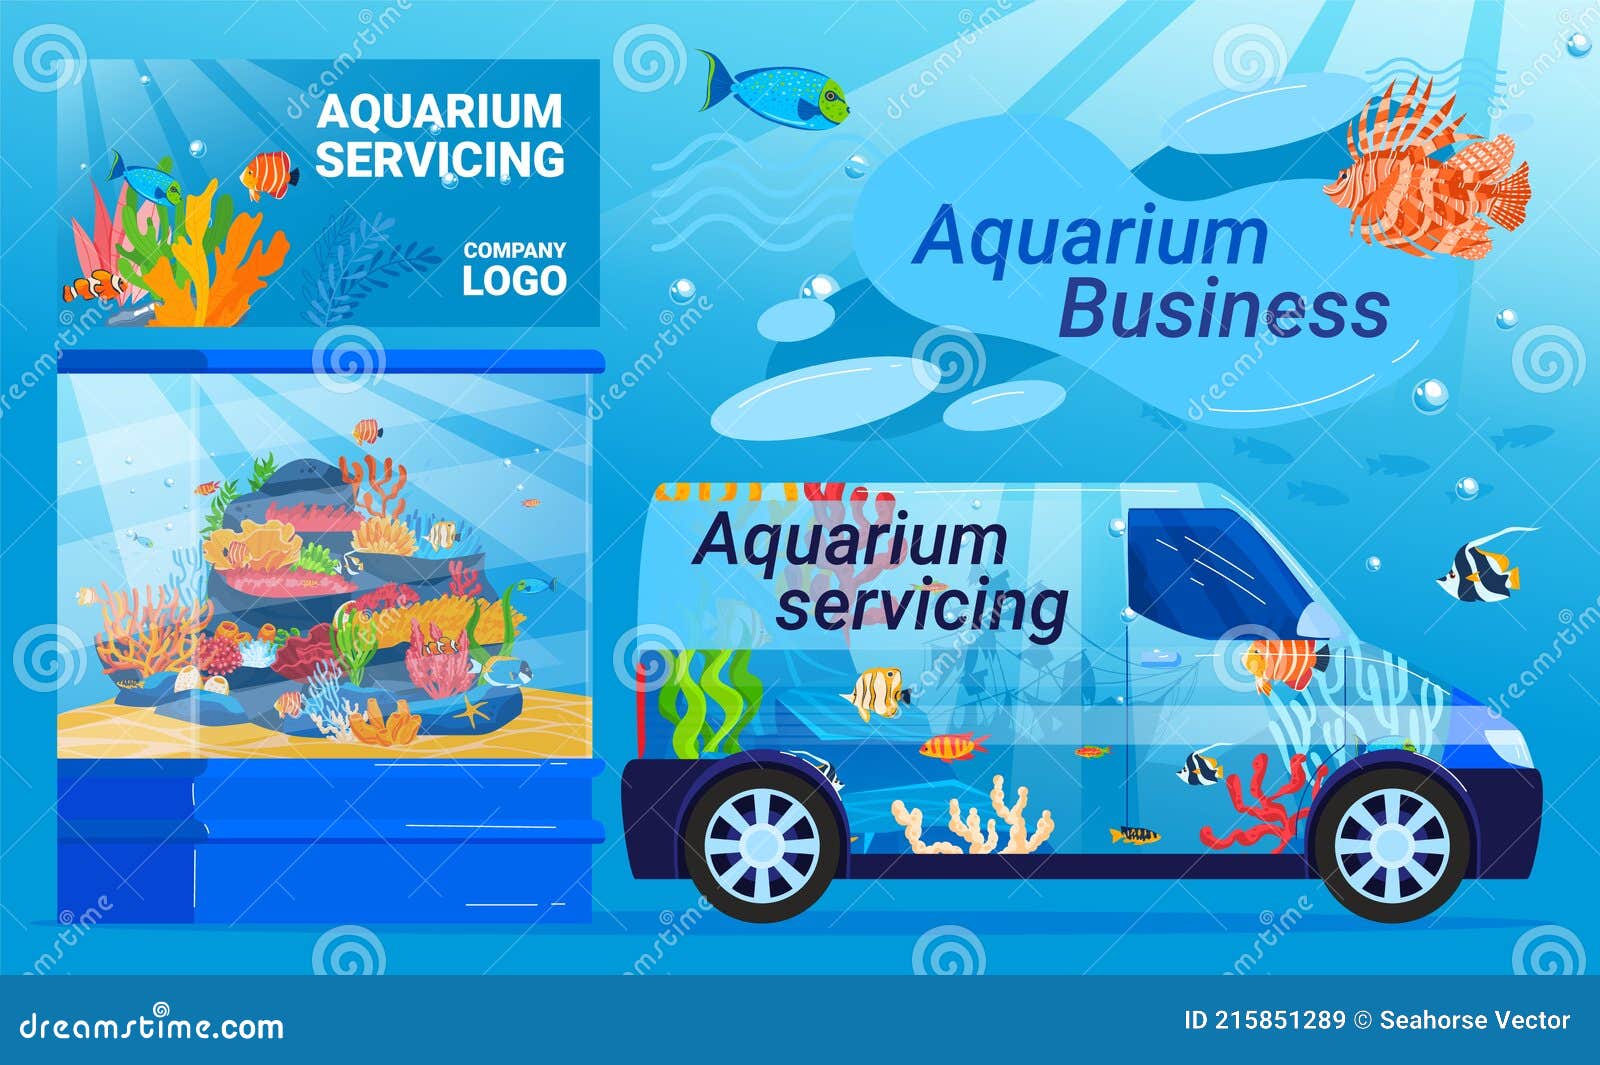 How to Start an Aquarium Maintenance Business